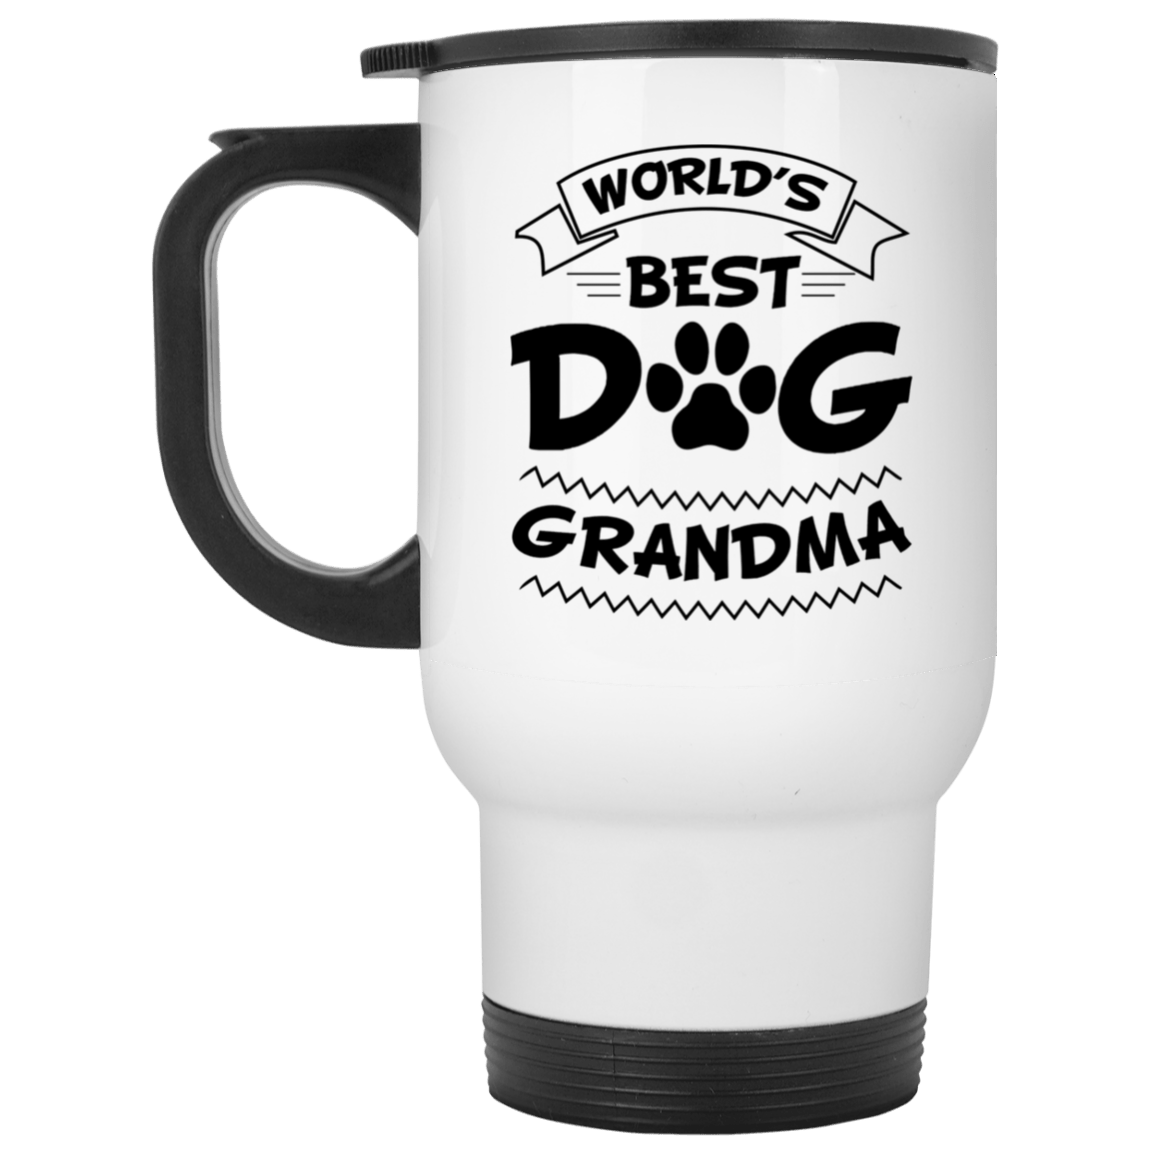 World's Best Dog Grandma - Mugs.